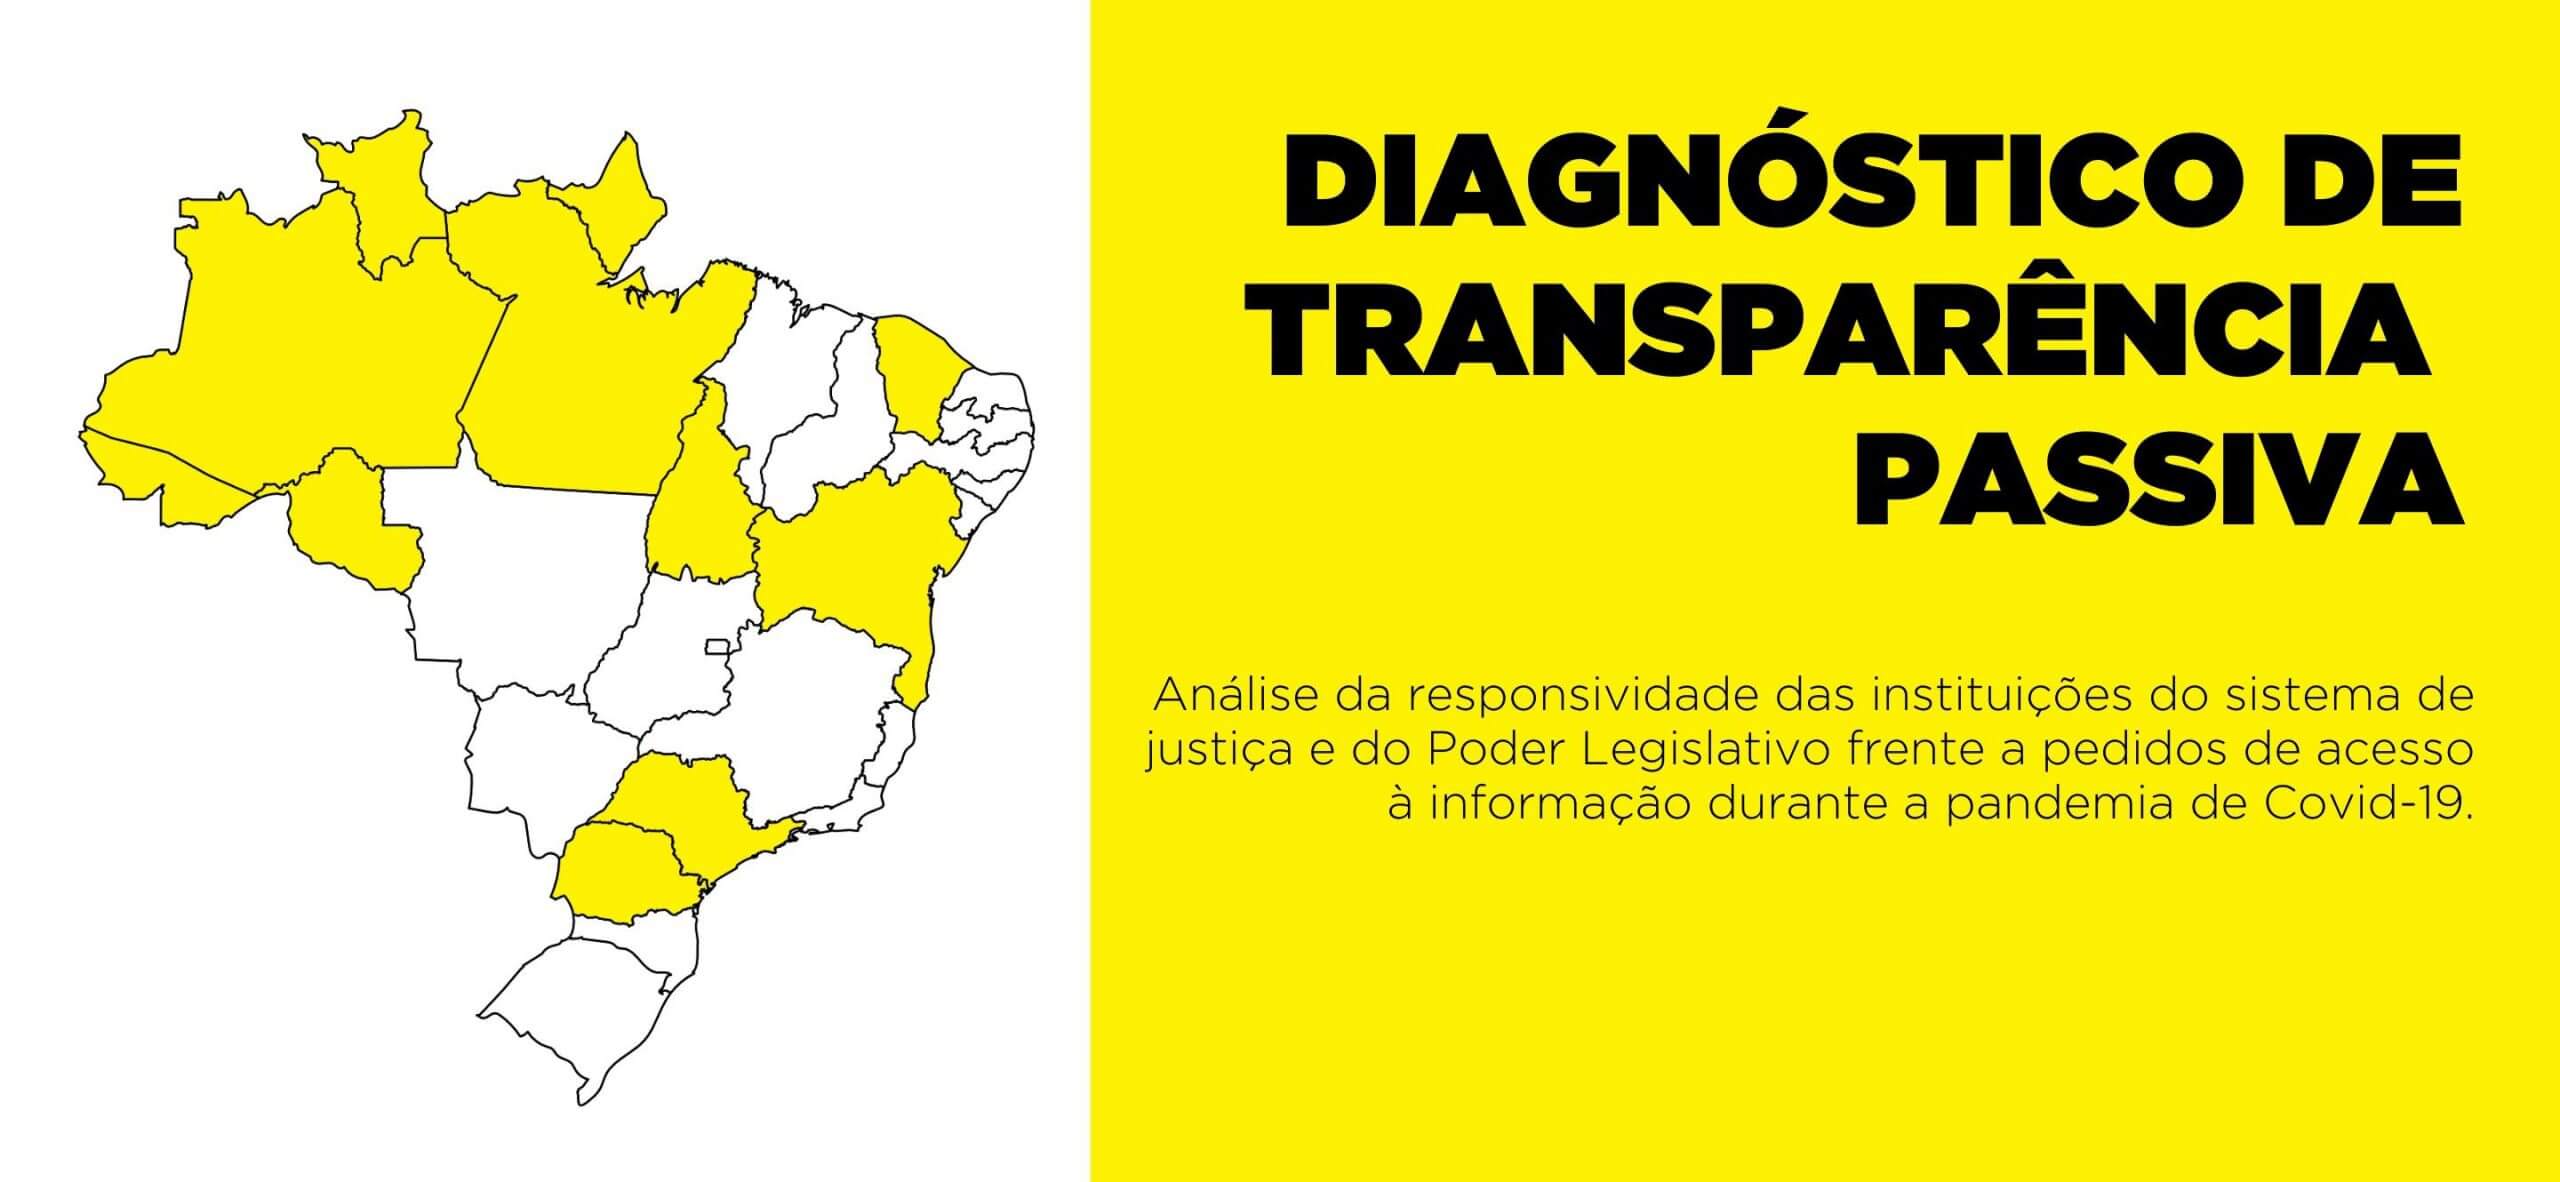 O relatório produzido pelo Justa registra a responsividade das instituições do sistema de justiça e do Poder Legislativo frente a pedidos de acesso à informação durante a pandemia.